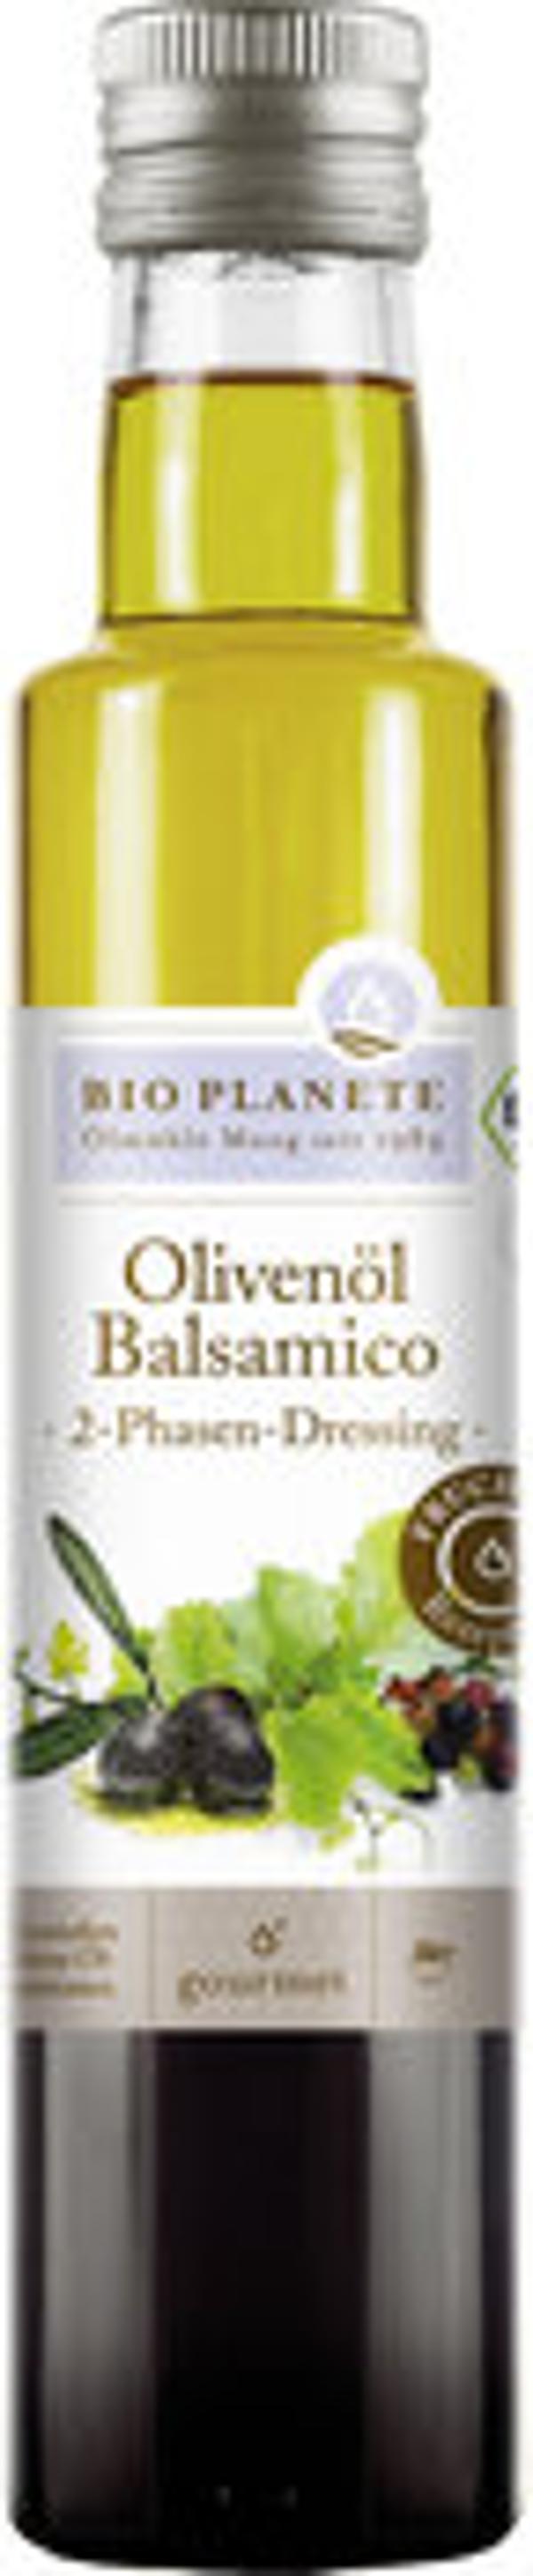 Produktbild von Bio Planète Olivenöl und Balsamico-Essig 250ml